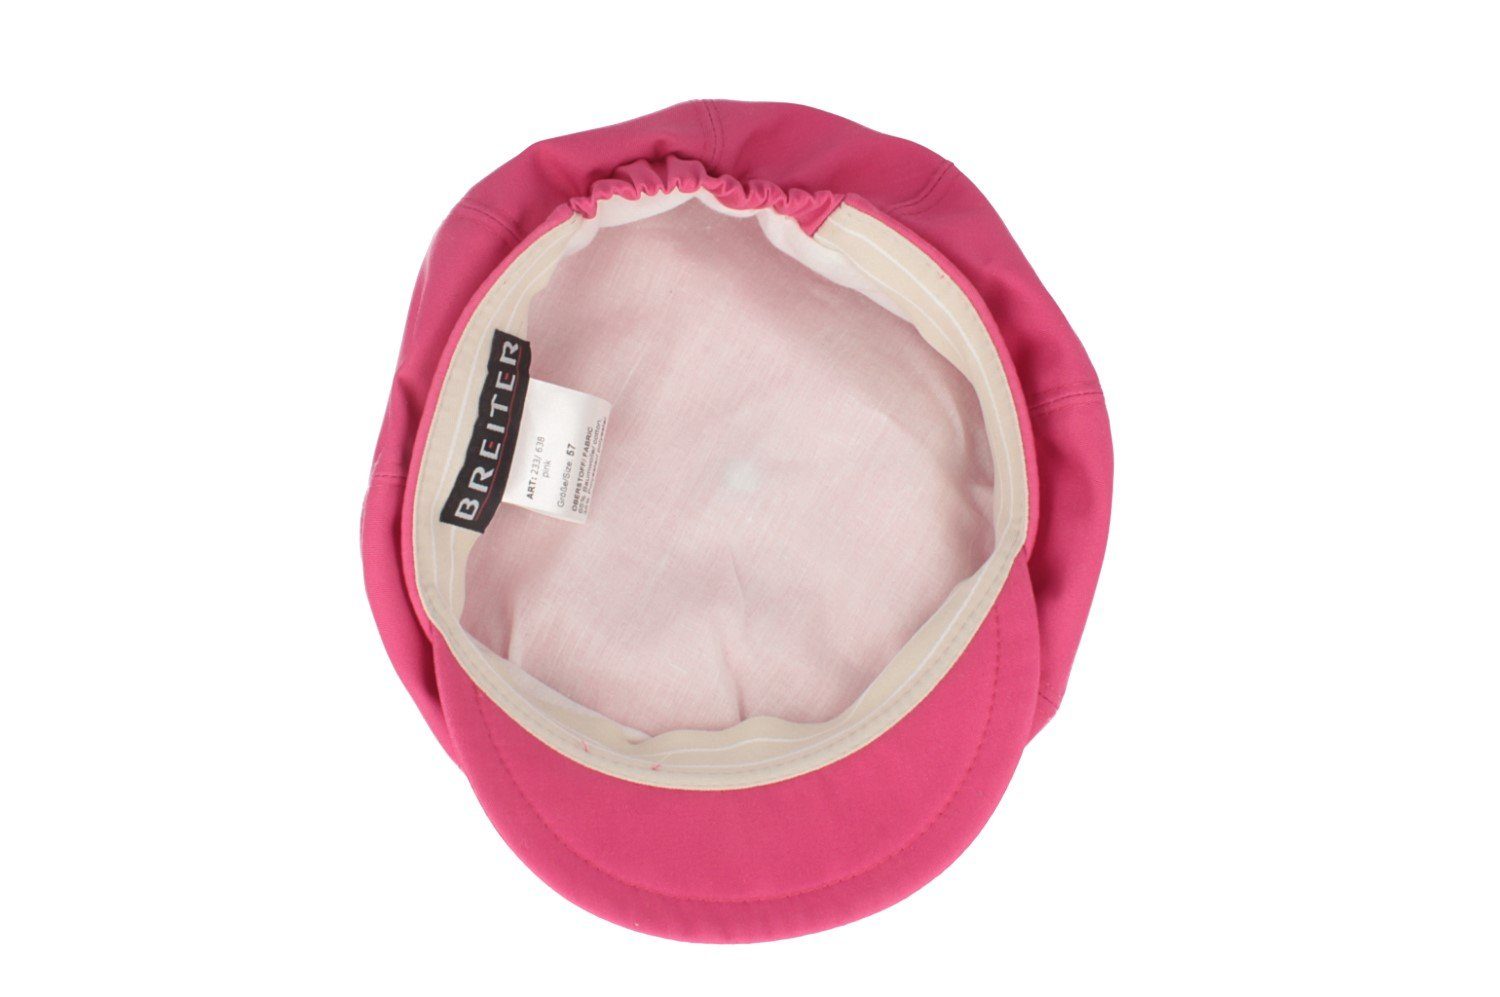 UV-Schutz50+ Cap 8-teilige Ballonmütze/Cap mit Baseball pink Breiter